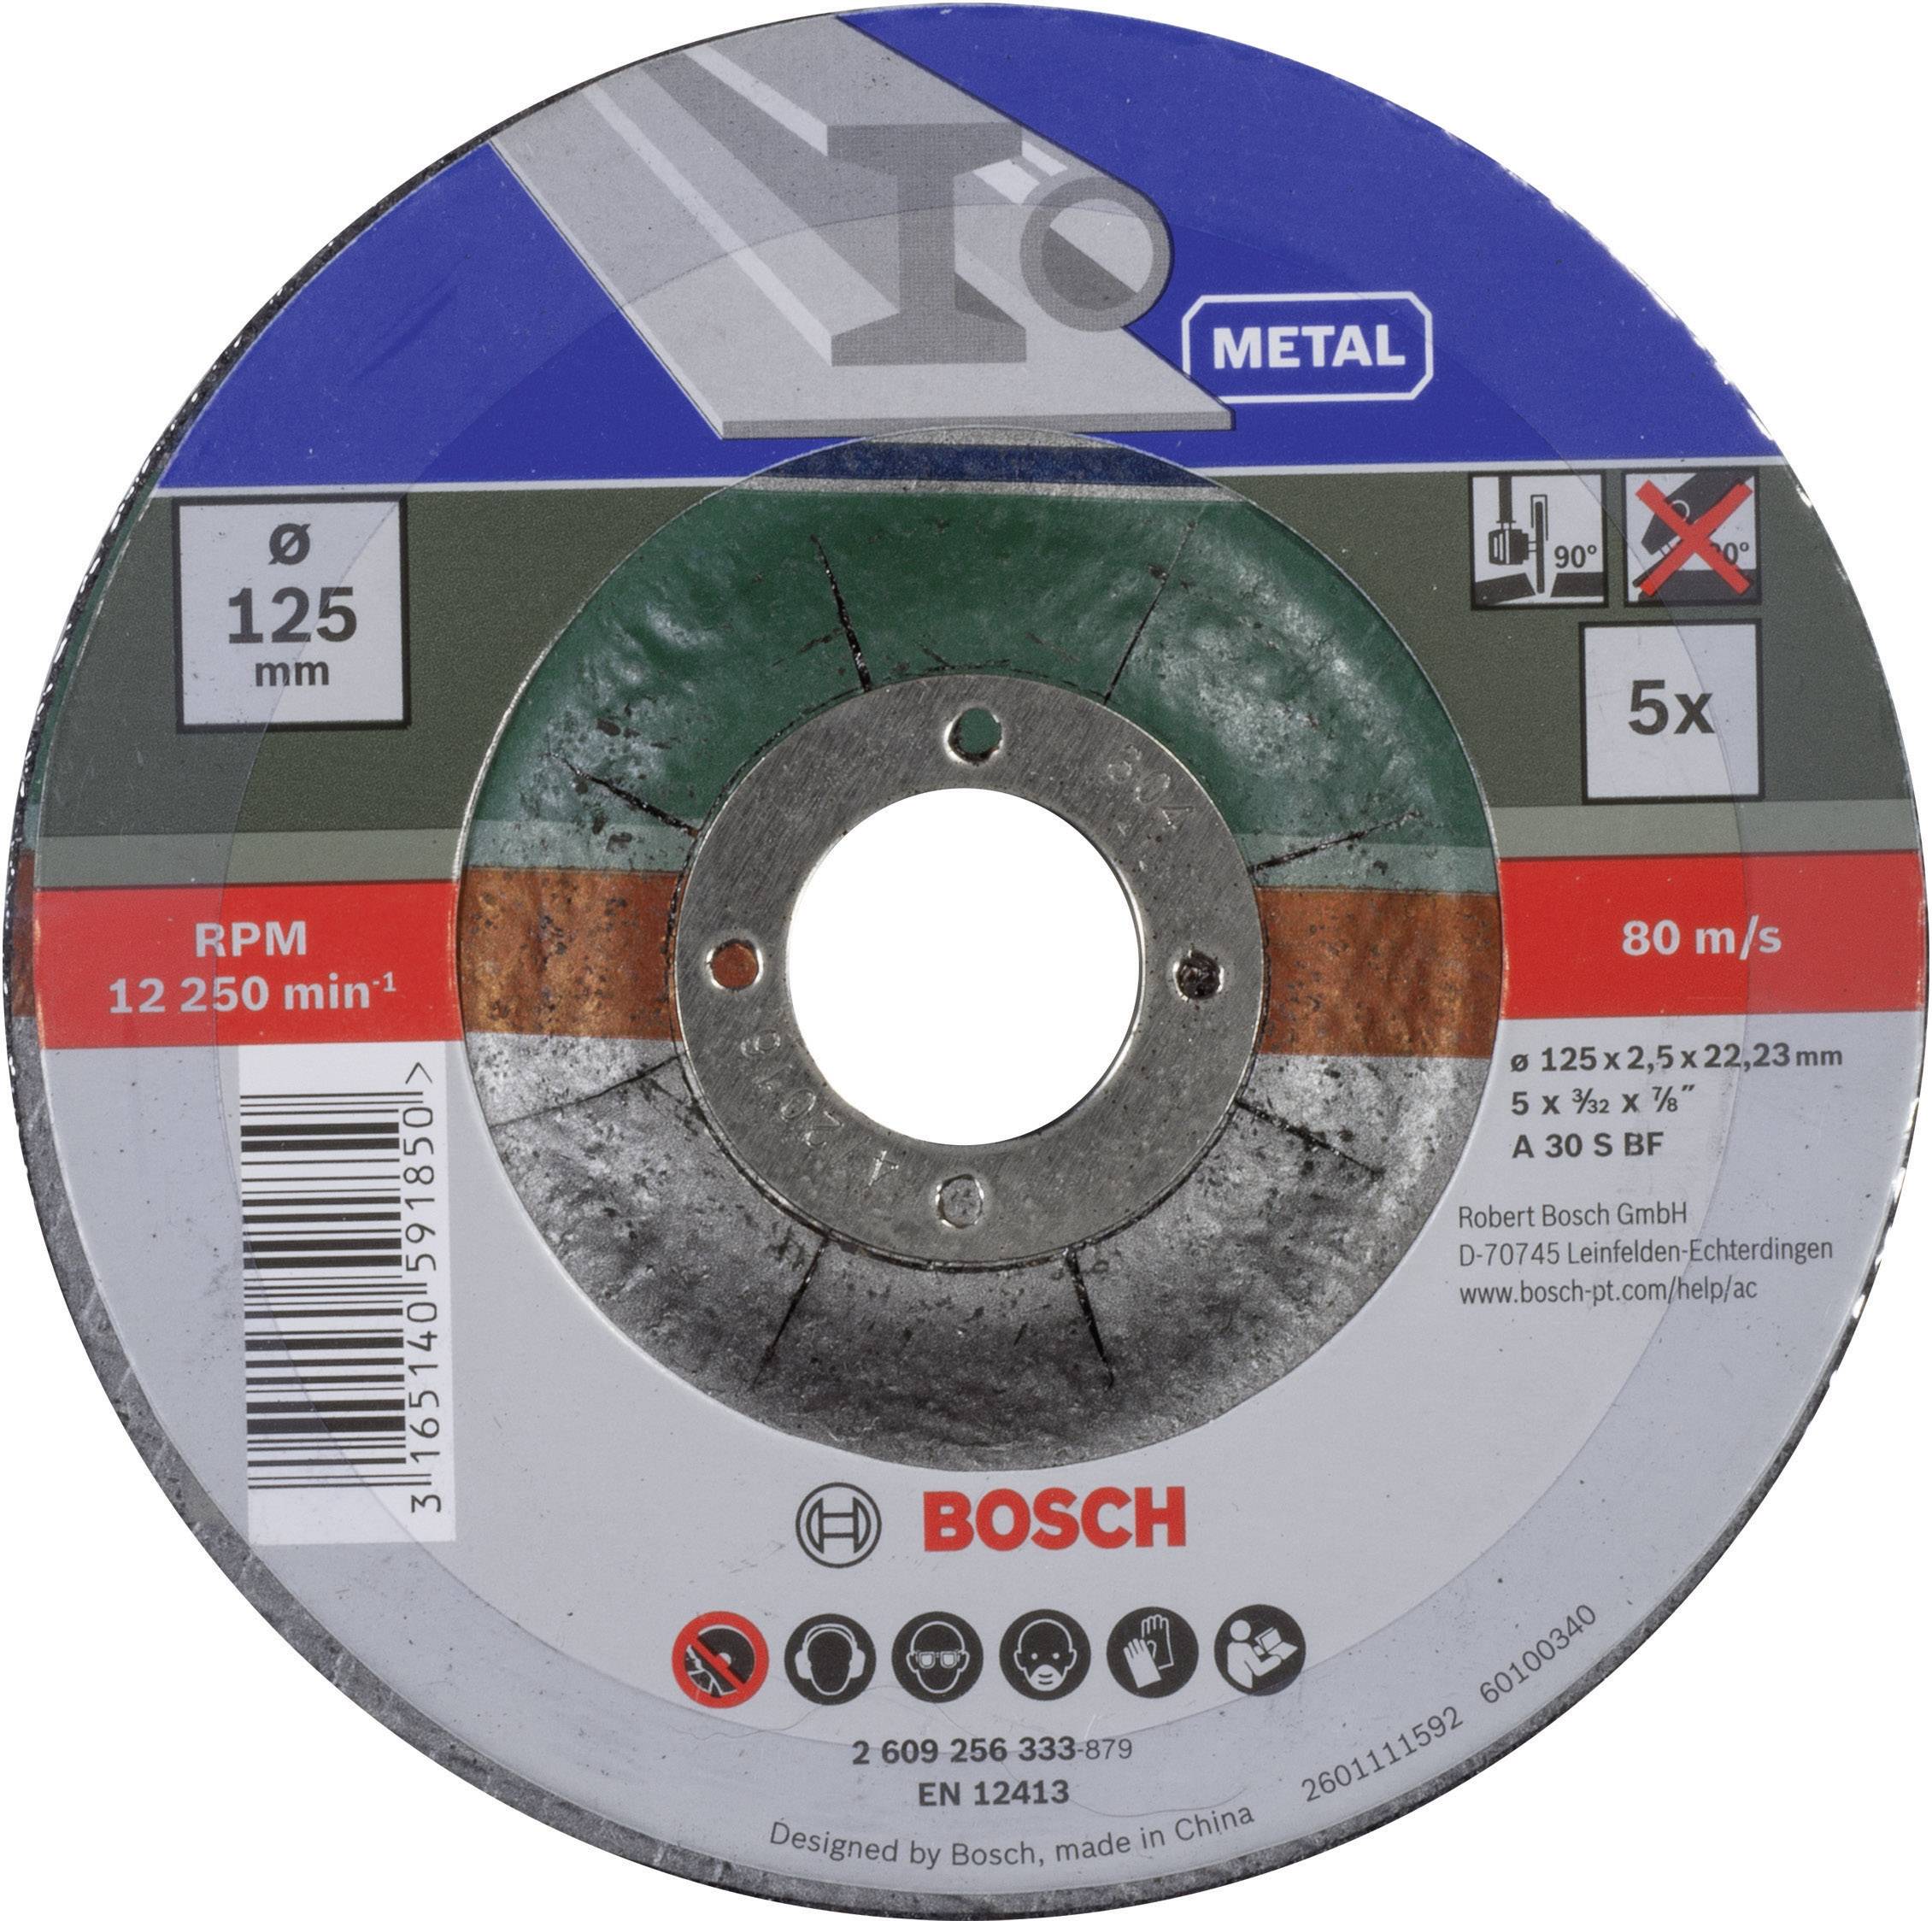 BOSCH _EW Bosch 5tlg. Trennscheiben-Set Durchmesser 125mm gekröpft für Metall 2609256333 (2609256333